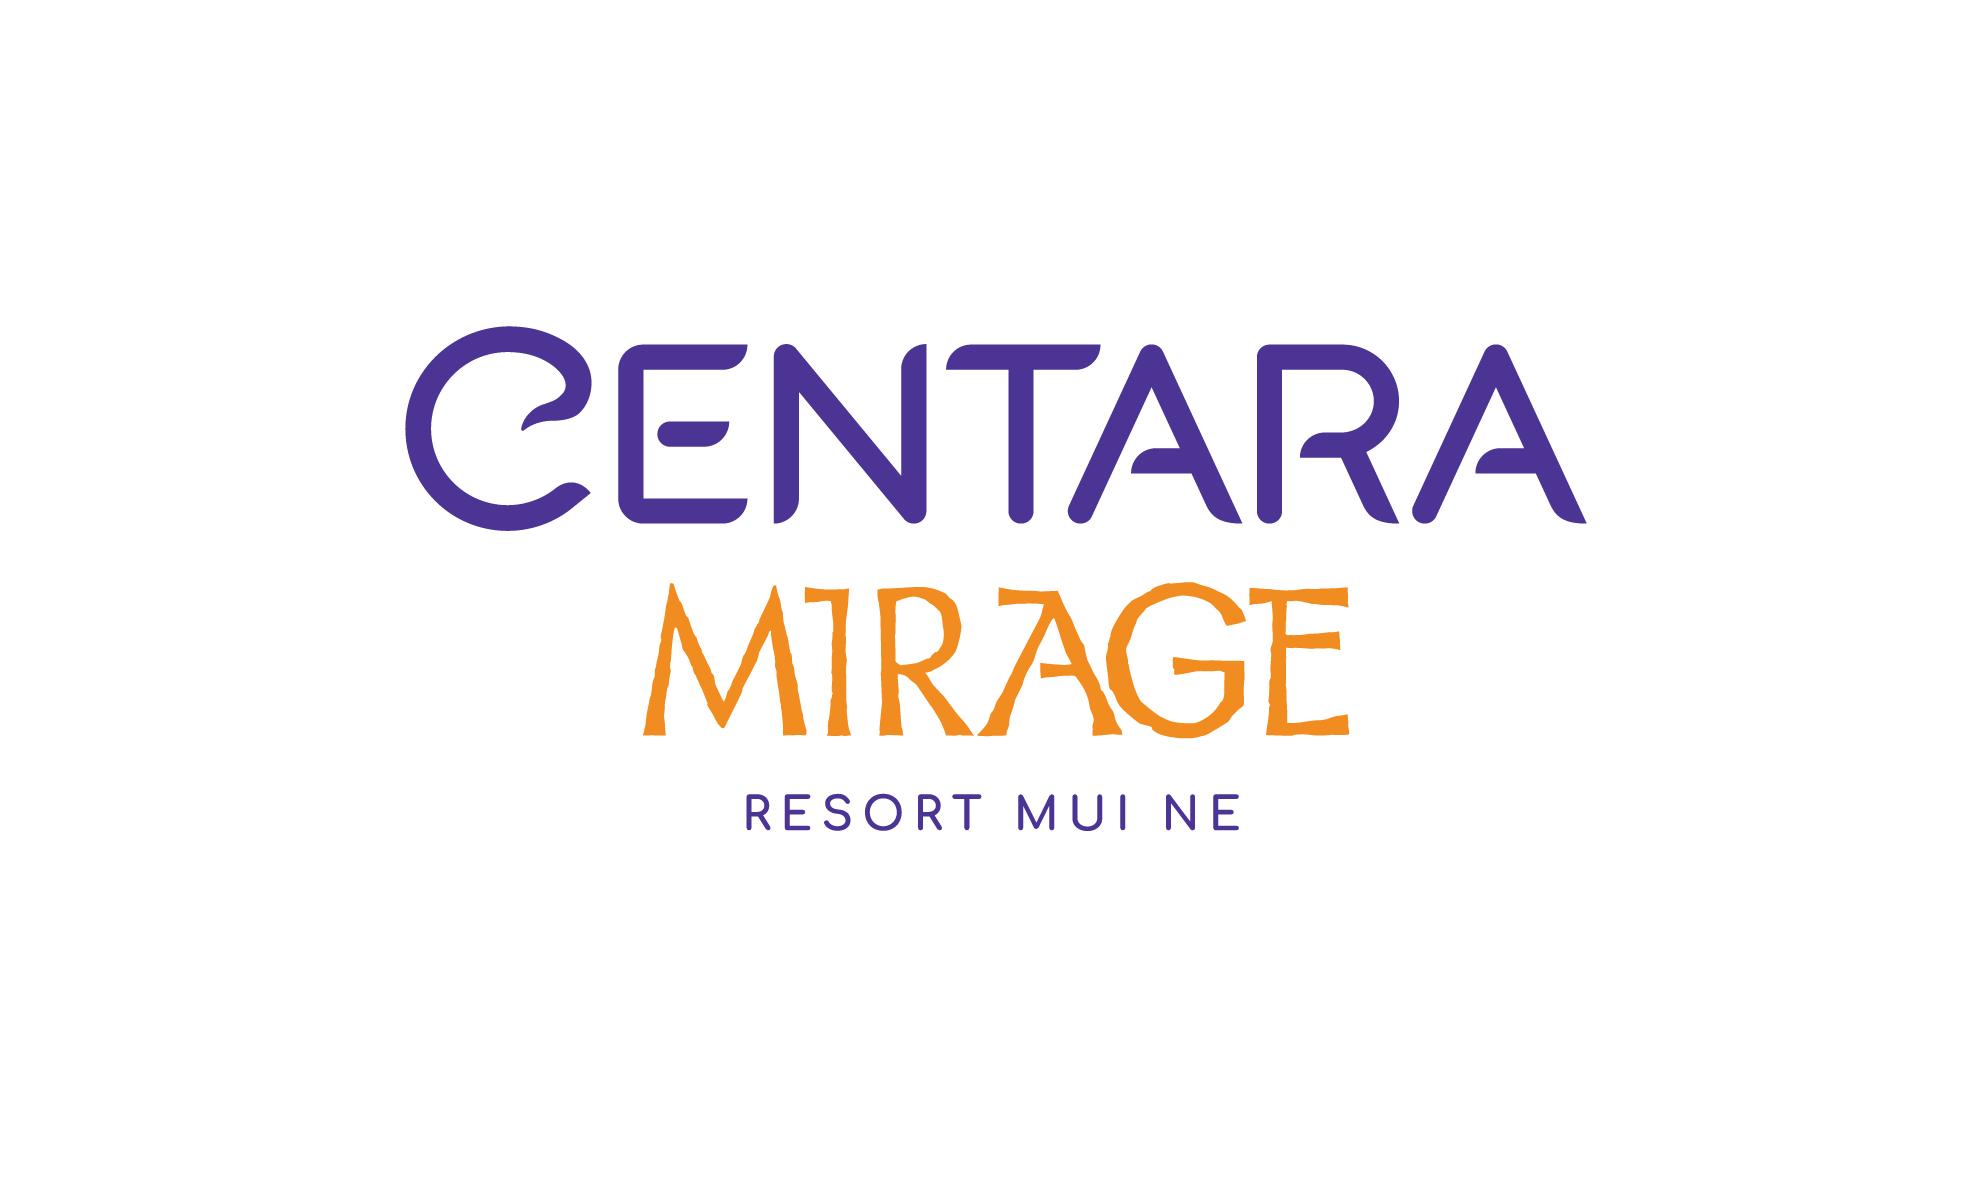 Centara Mirage Resort Mui Ne